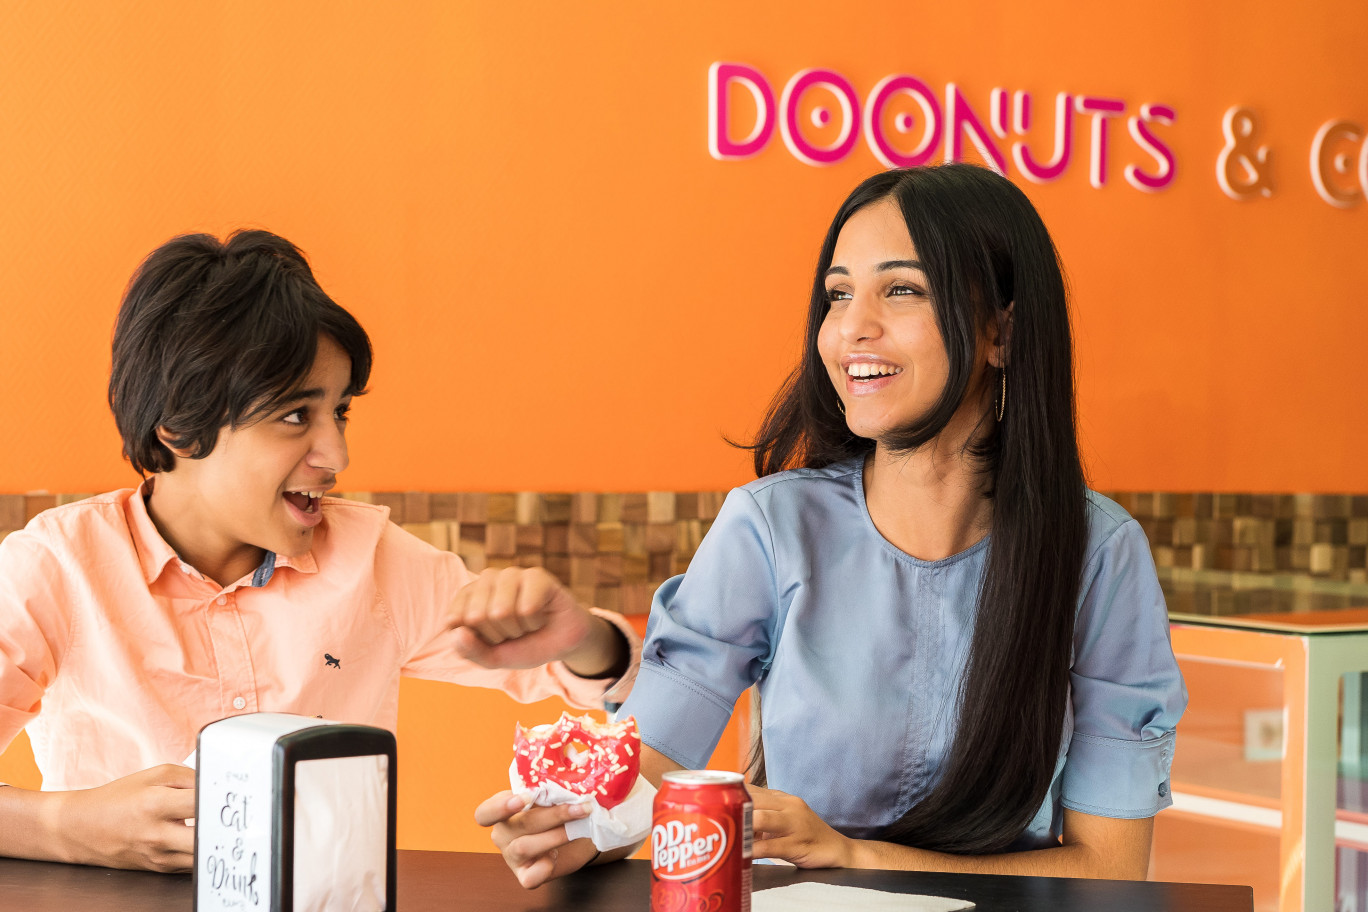 L’enseigne Doonuts and co a ouvert ses portes le 27 août à la capitale mosellane.  